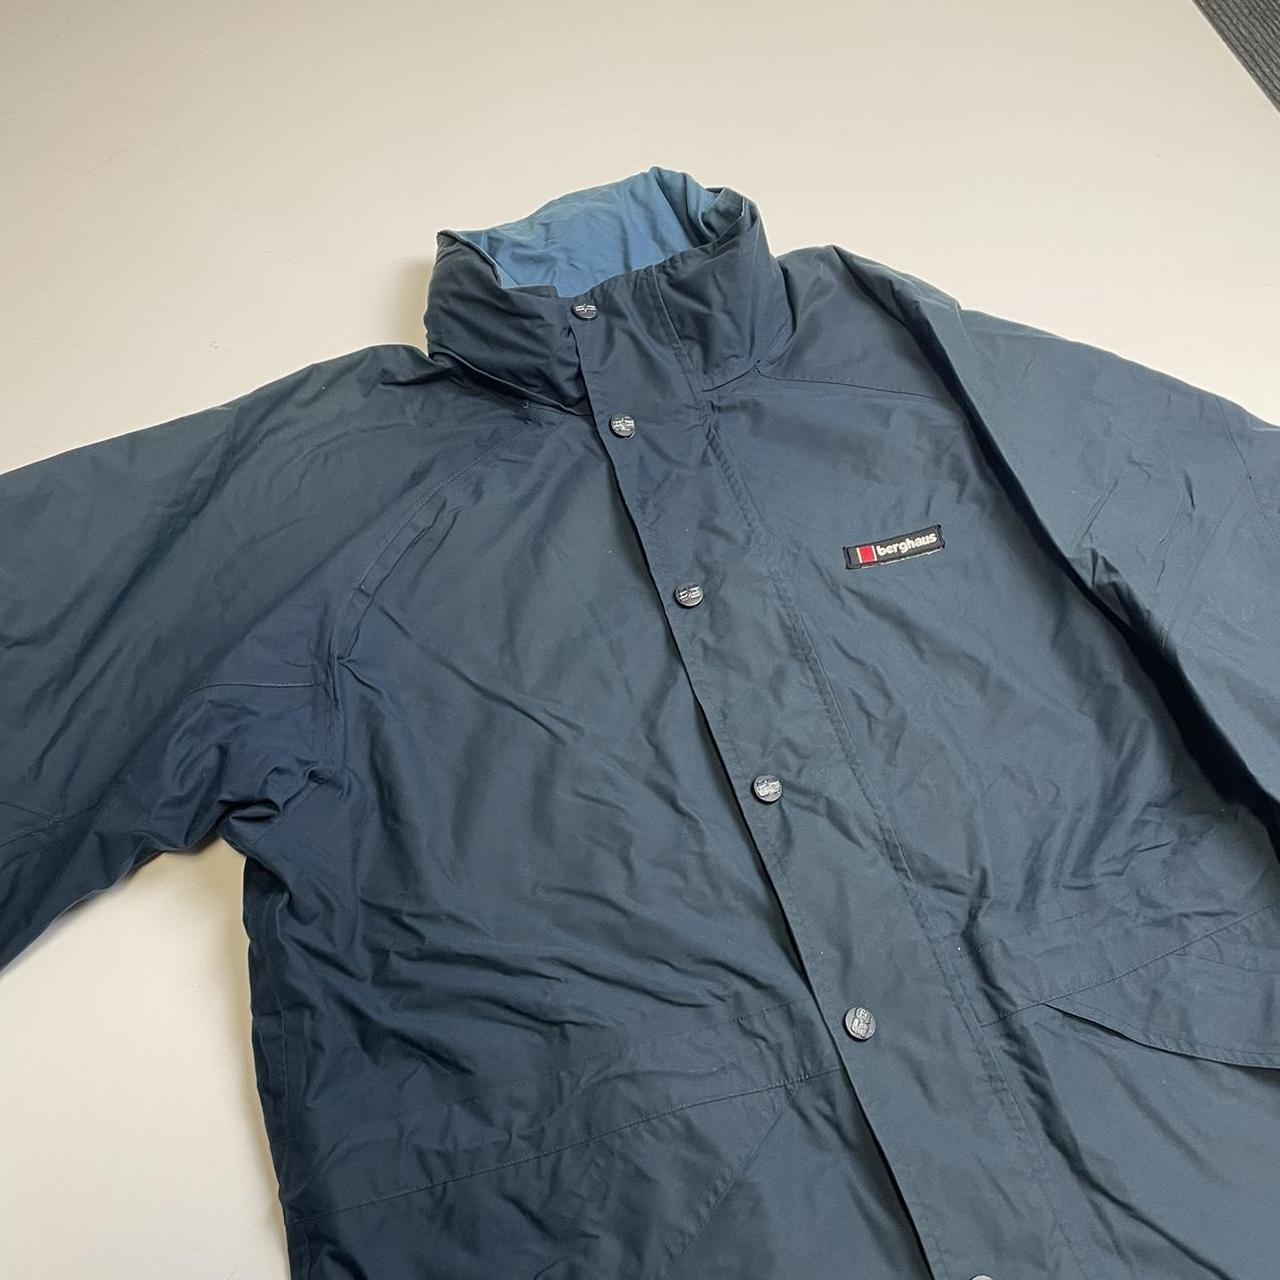 Vintage Berghaus waterproof jacket blue 📌 Our... - Depop